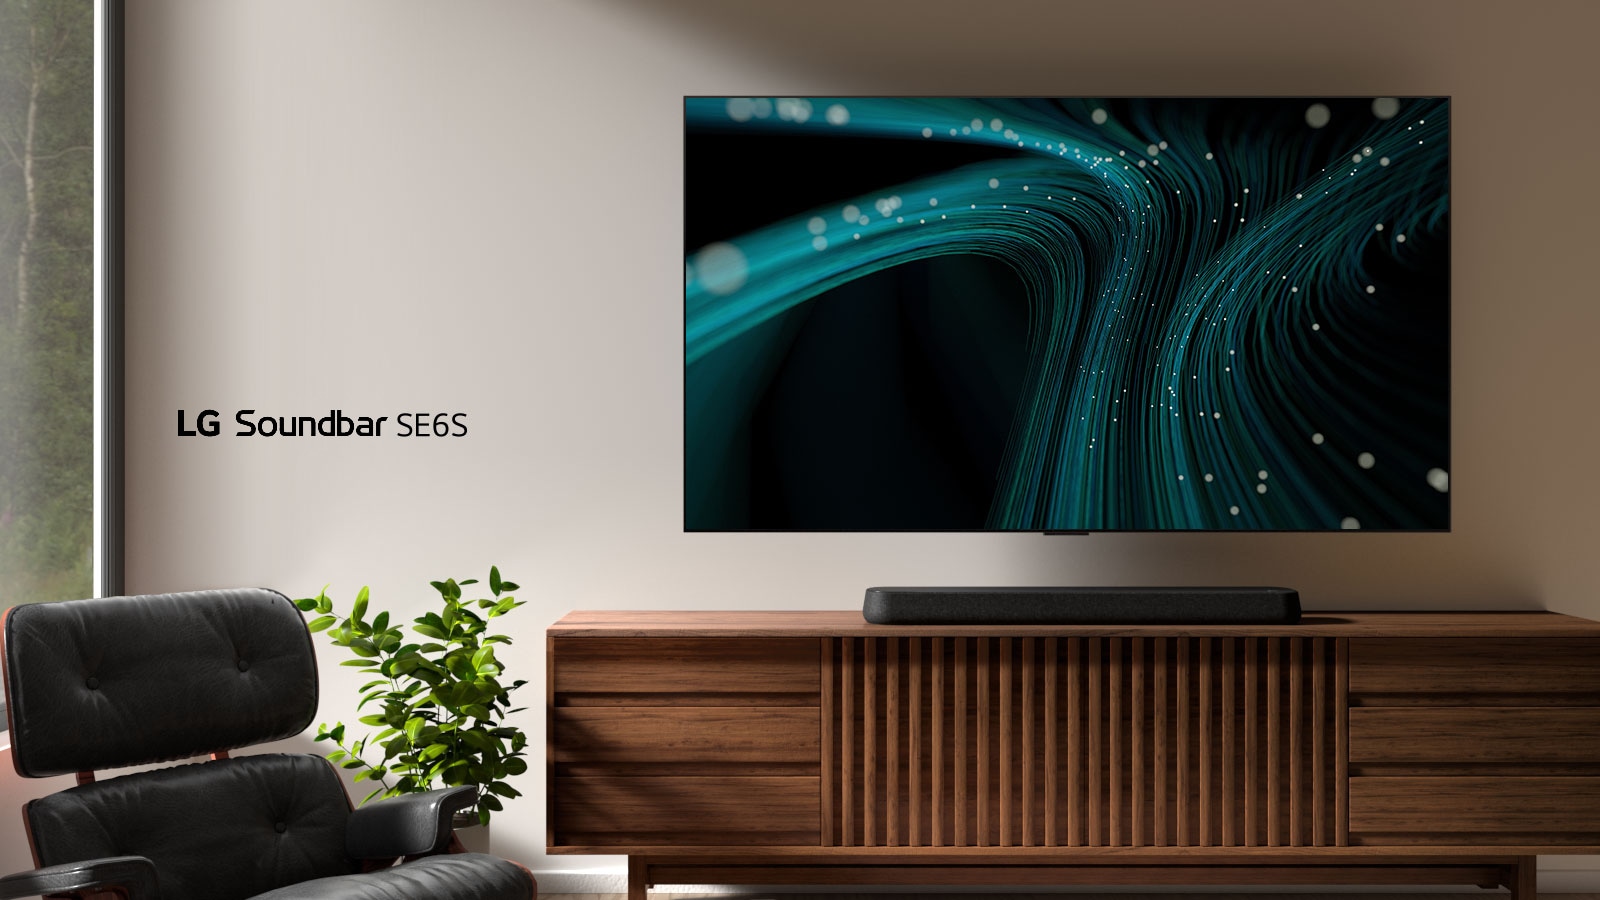 LG Sound Bar SE6S on puisen kaapin päällä. Sen yläpuolella on pistevaloja ja seinätelineessä oleva televisio, josta lähtee sinisiä ääniaallon kuvia. Vasemmalla puolella näkyy osittainen ikkunan, ja viherkasvin eteen on sijoitettu musta, nahkainen nojatuoli.